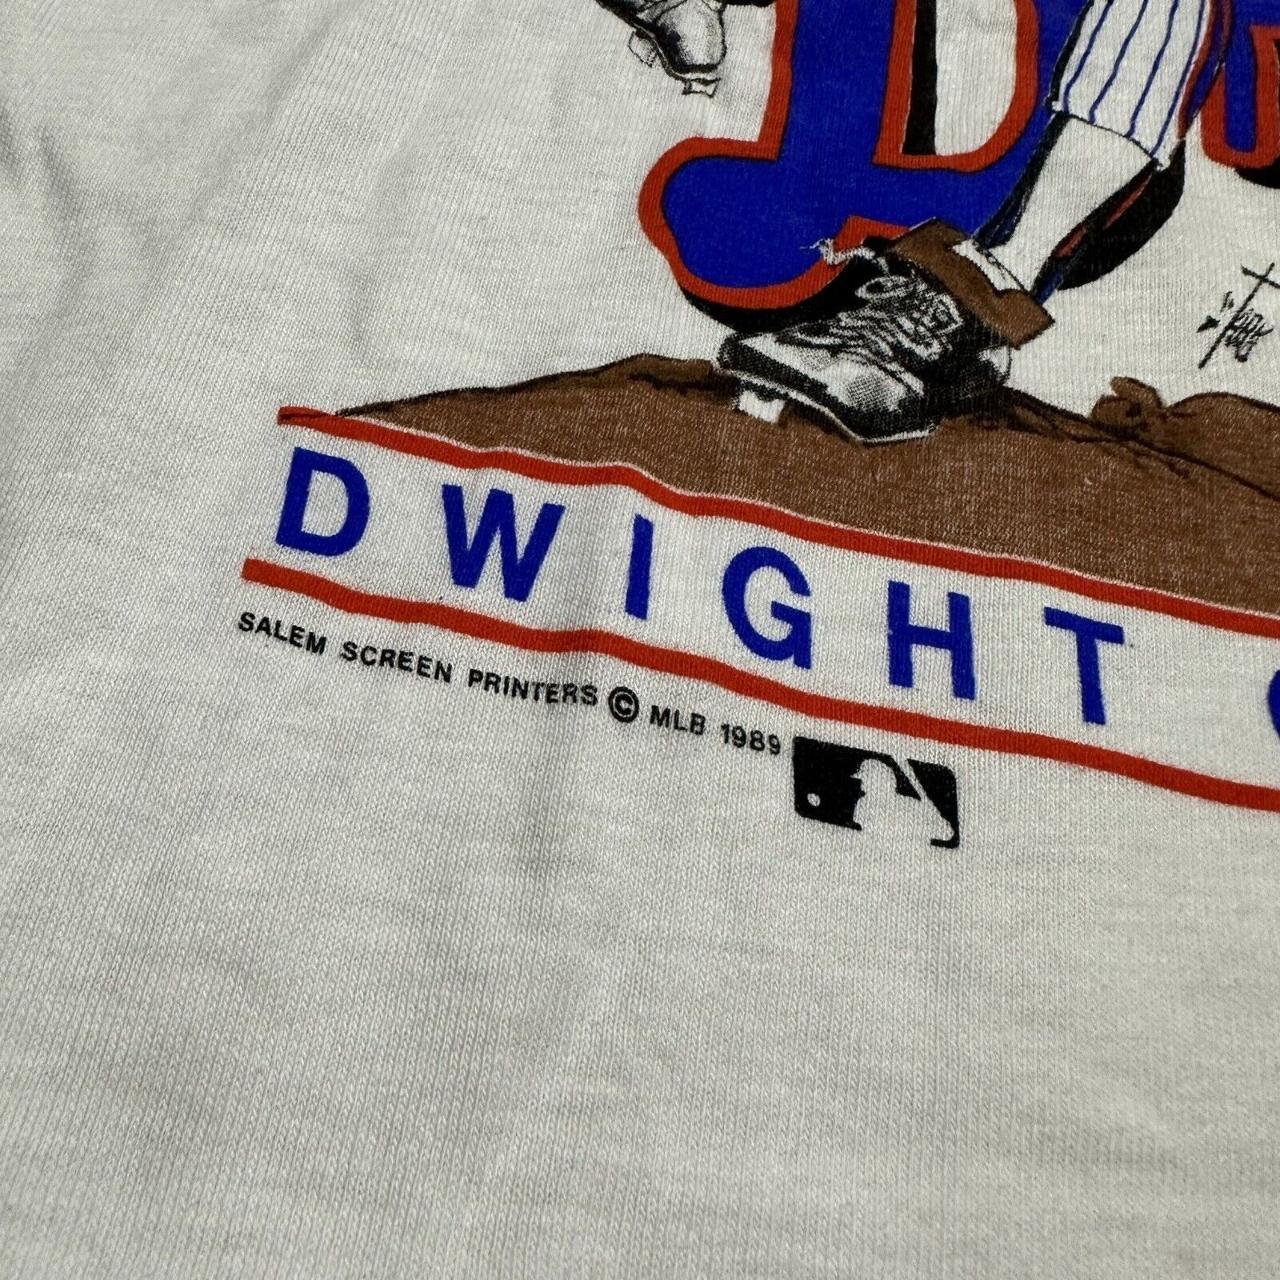 Dwight Gooden Dr K T-shirt